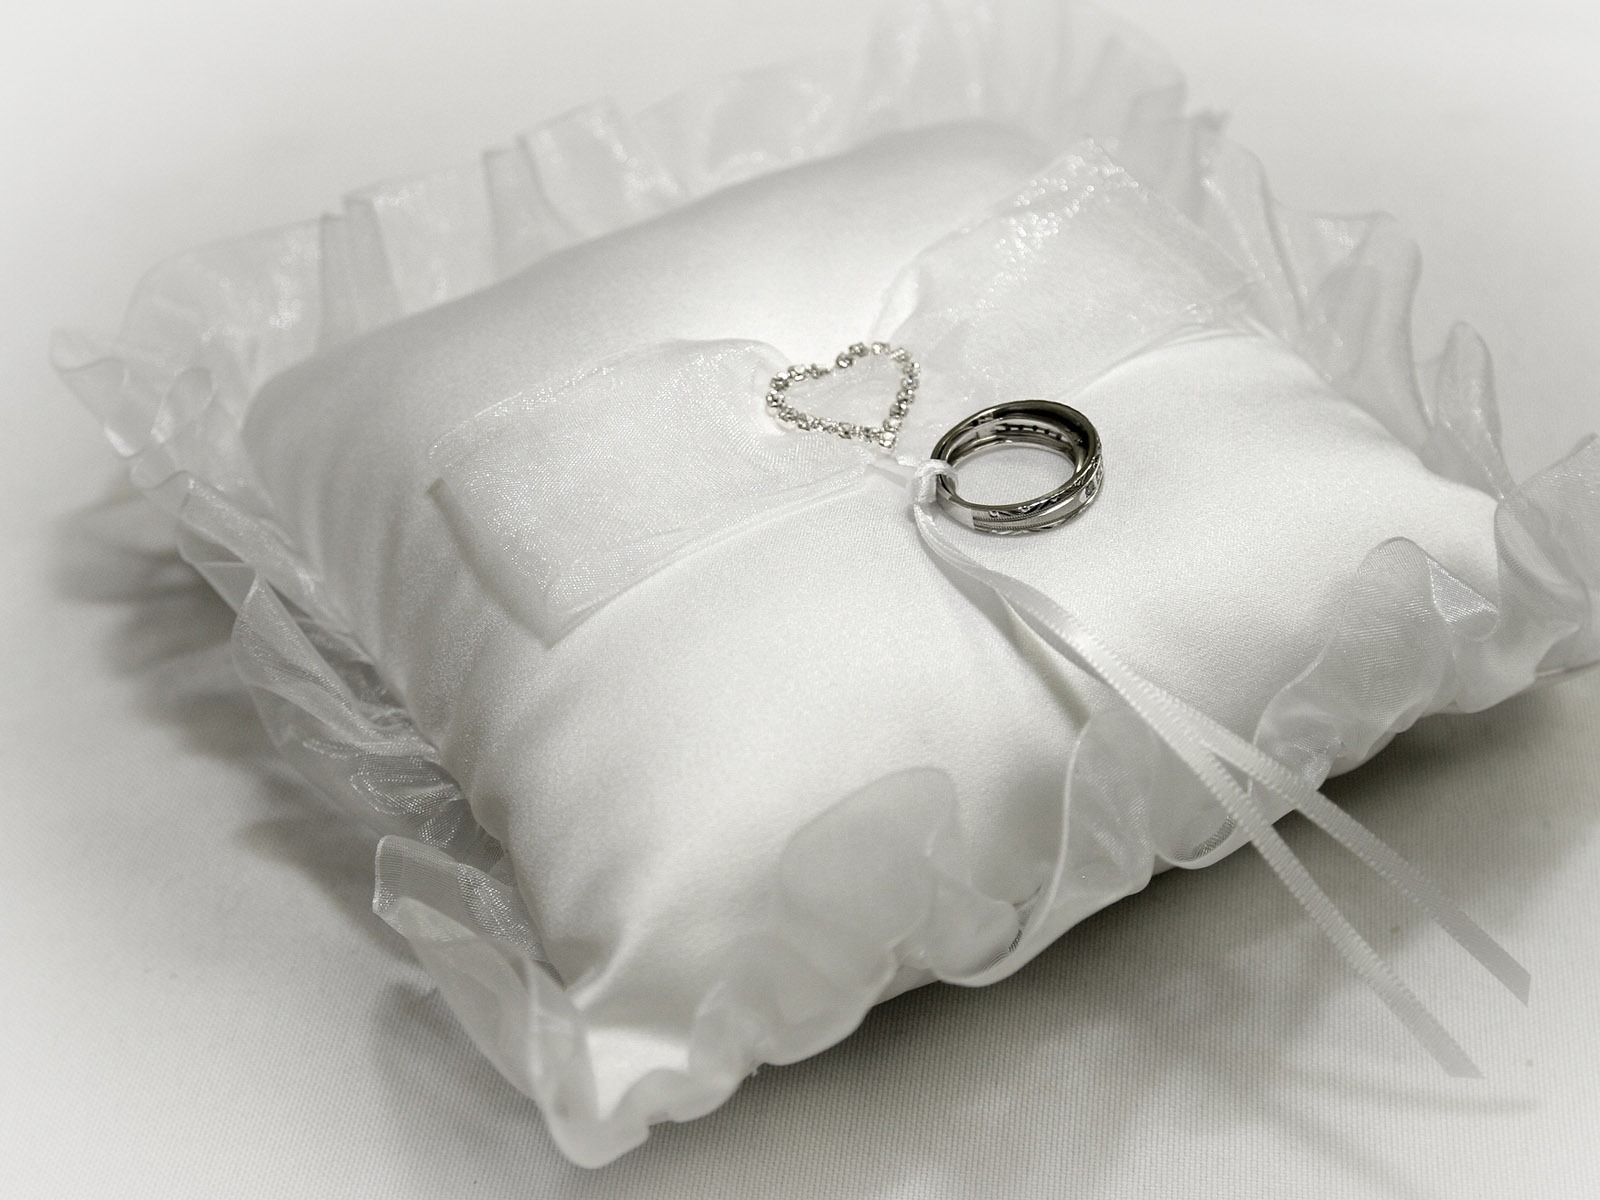 Mariage et papier peint anneau de mariage (1) #10 - 1600x1200